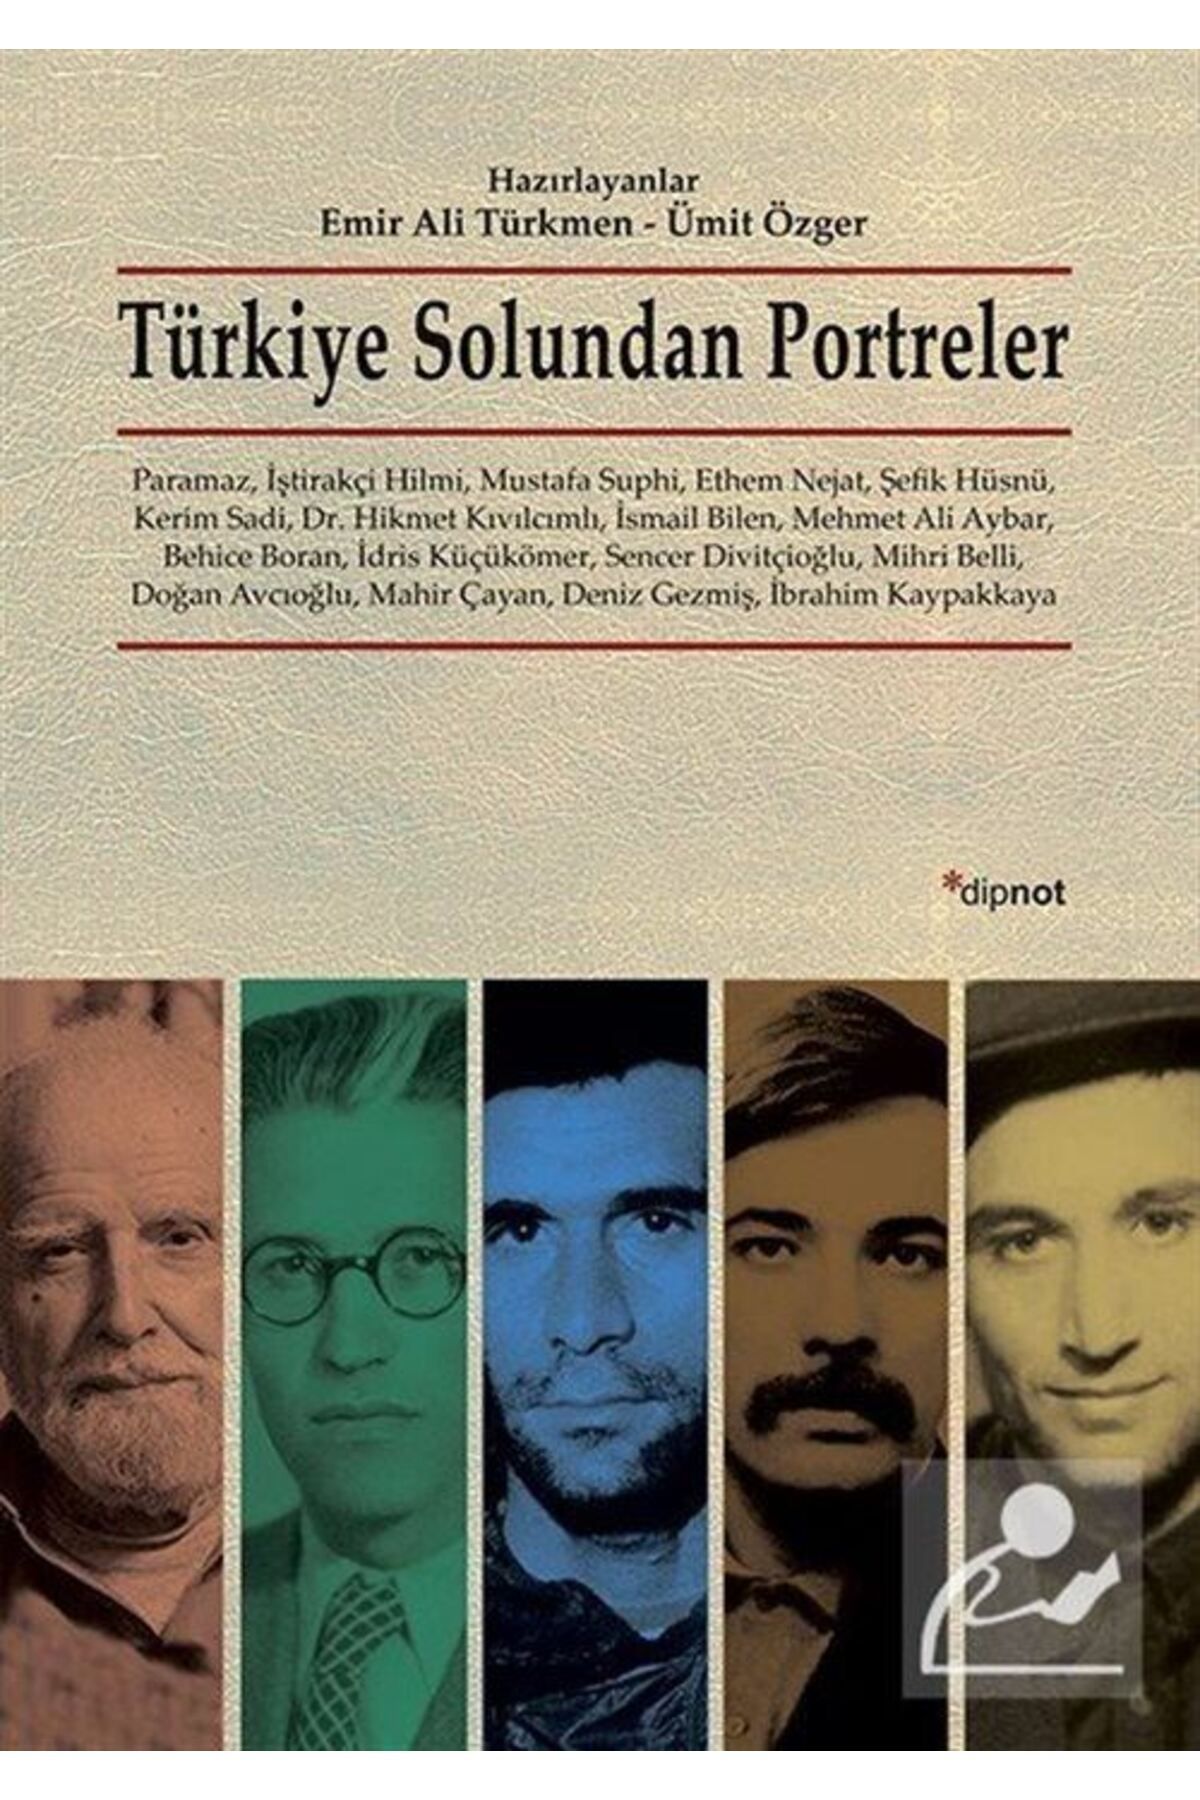 Dipnot Yayınları Türkiye Solundan Portreler